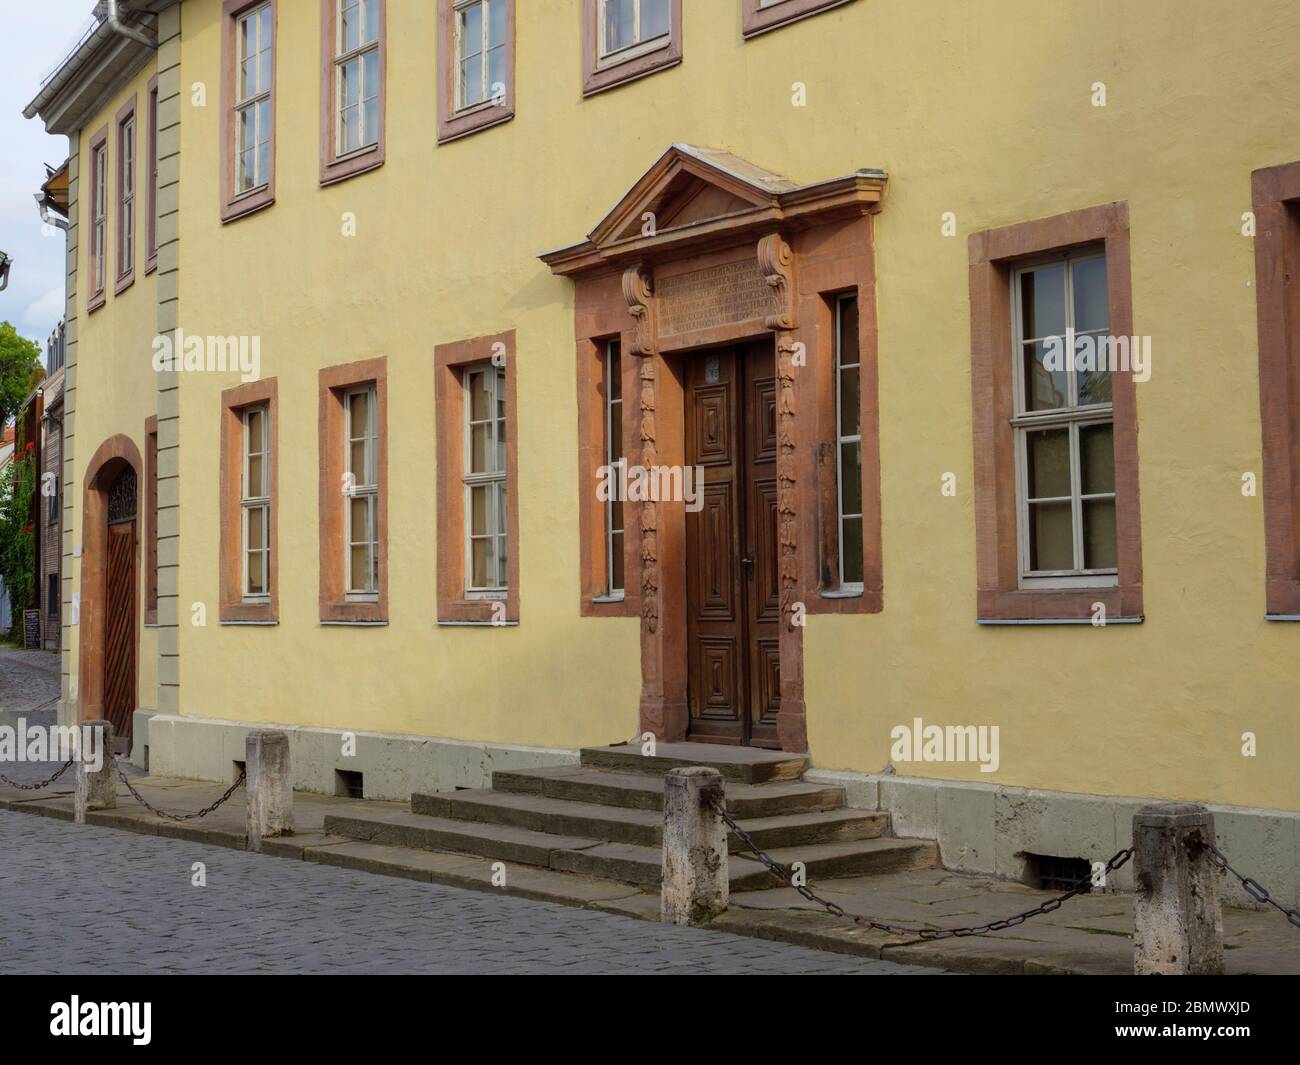 Goethehaus, Weimar, Welterbe UNESCO, Thüringen, Deutschland Foto de stock